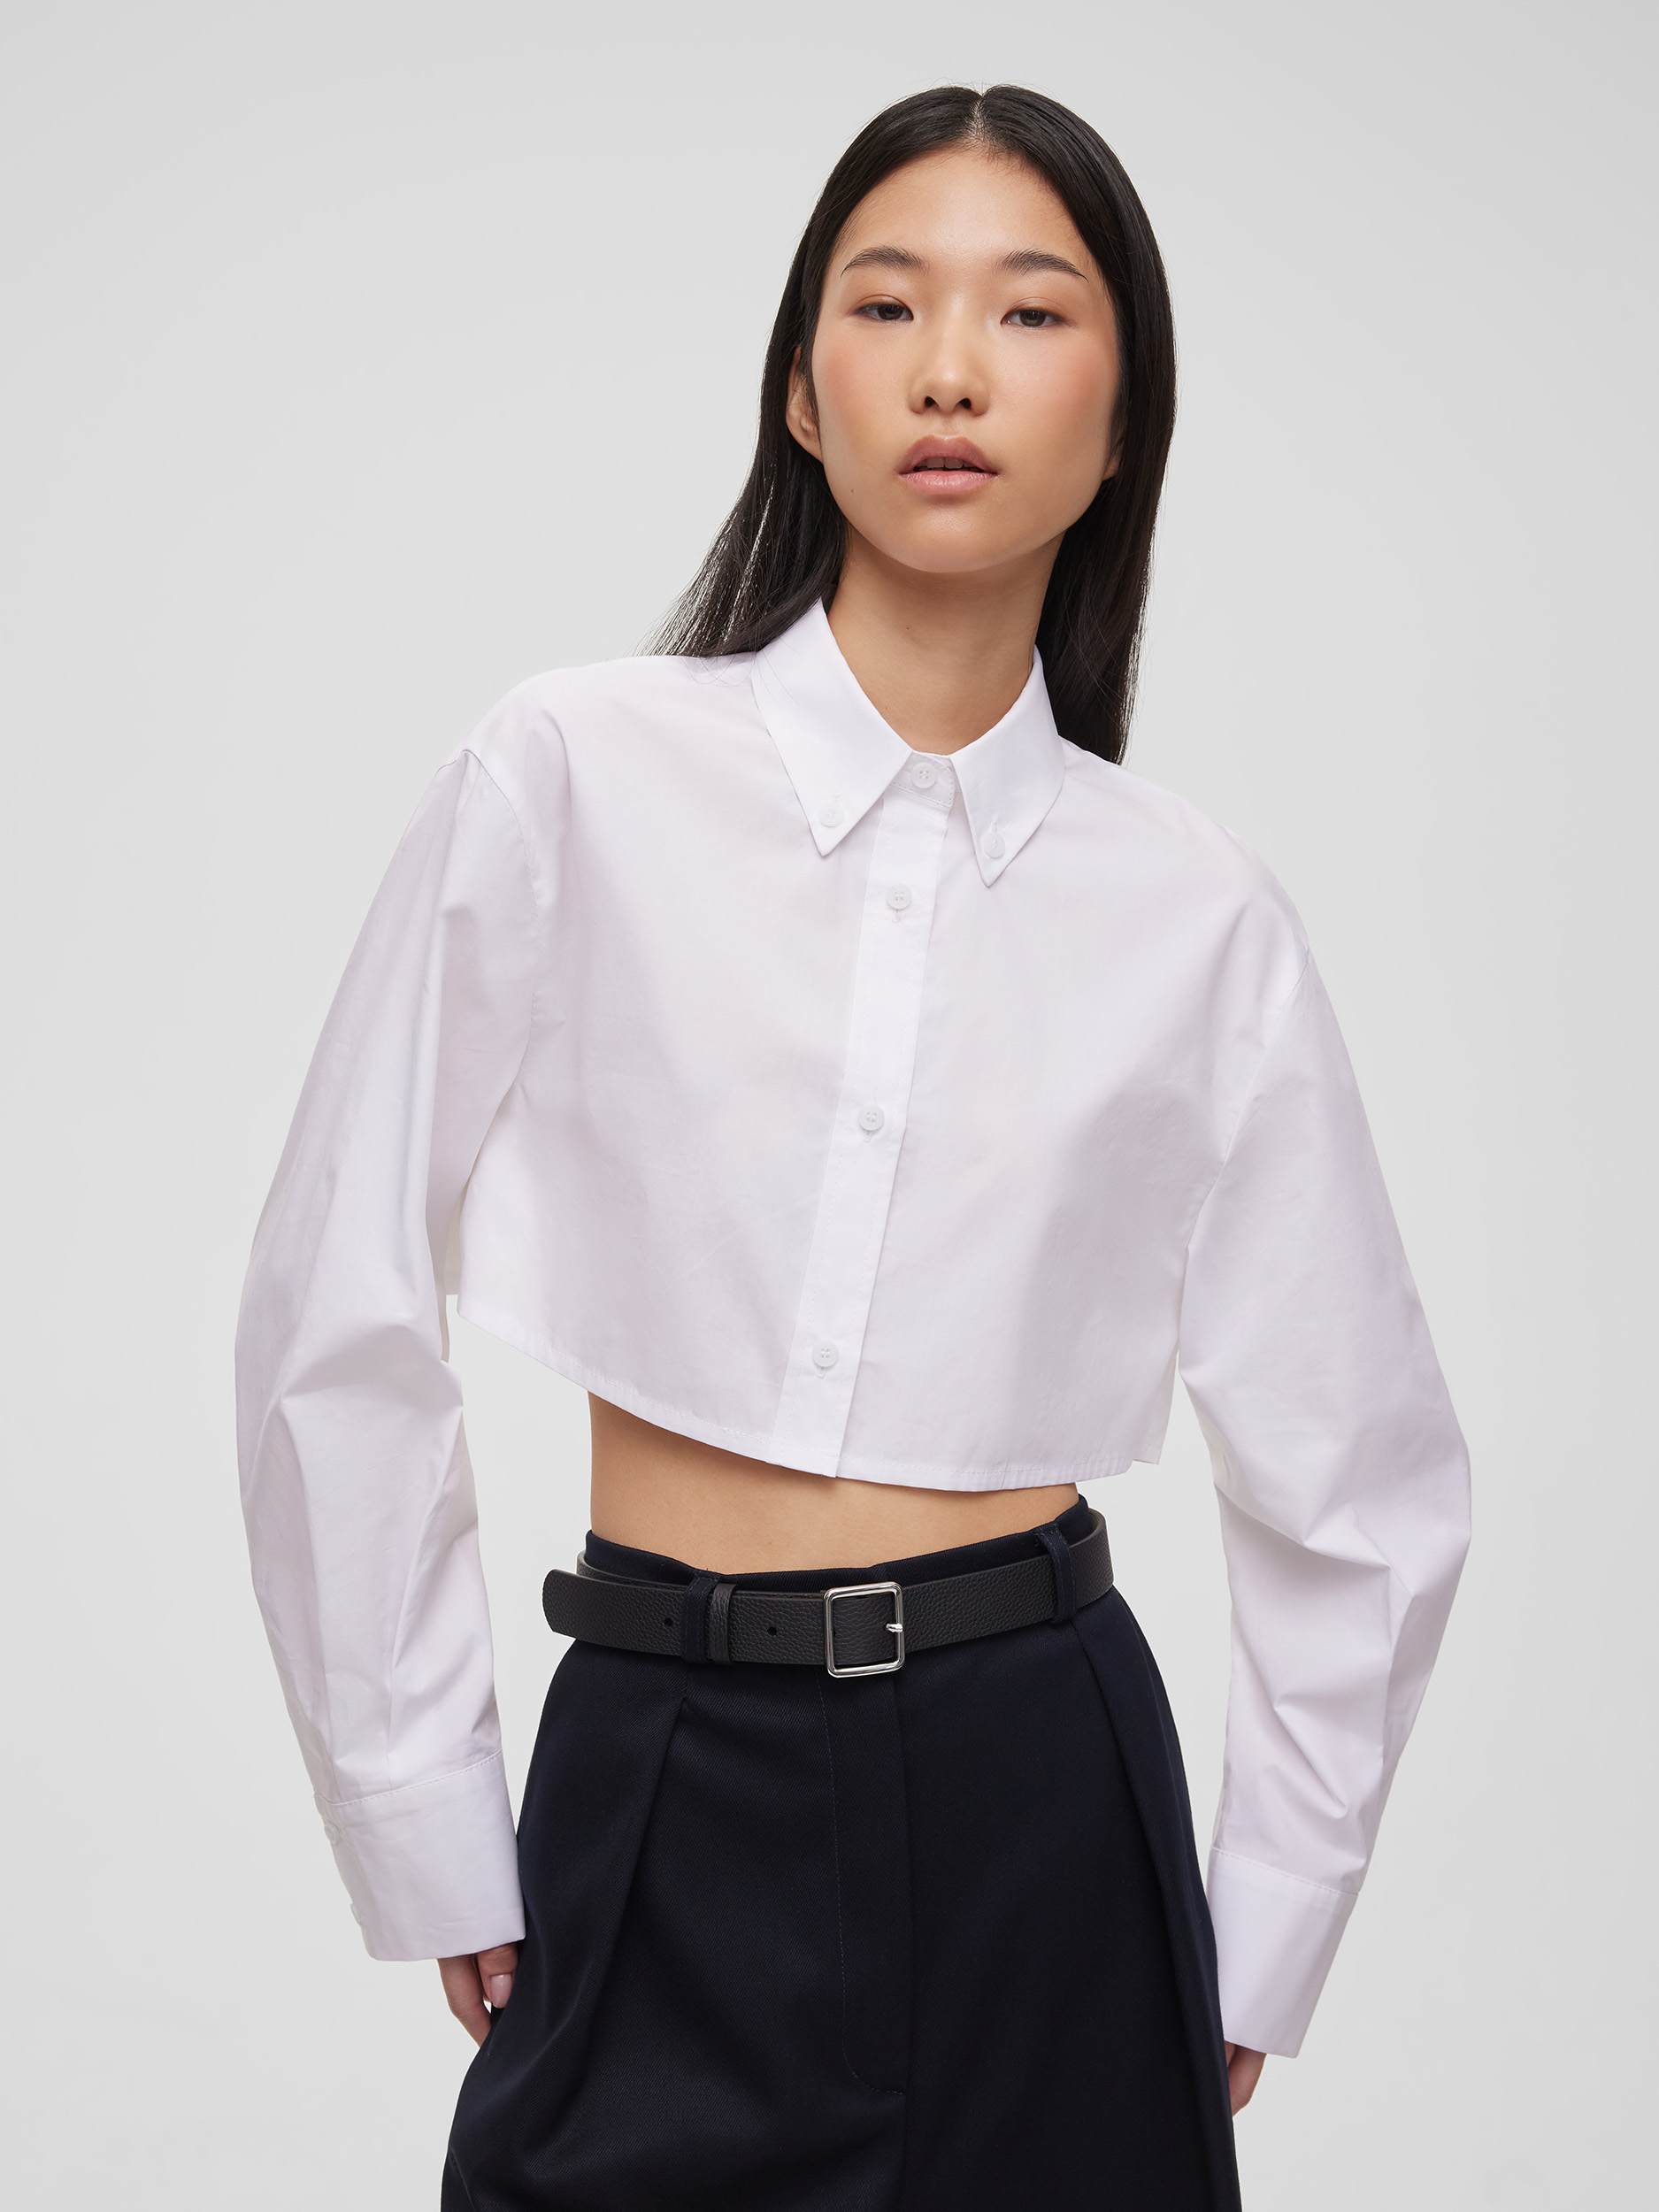 Рубашка женская короткая из хлопка, цвет – белый рубашка женская короткая из хлопка цвет – черный